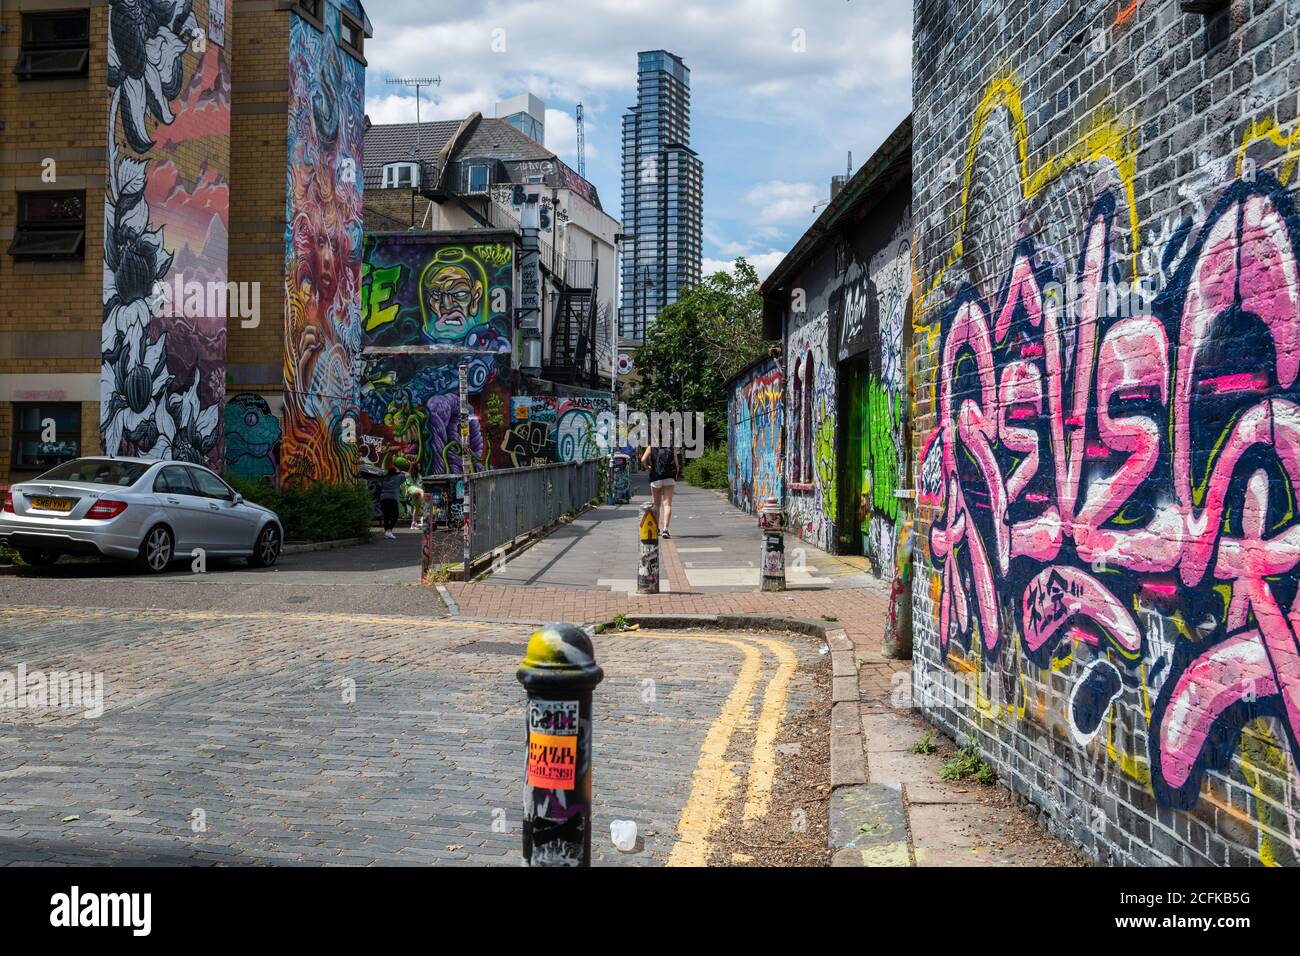 Shoreditch en el extremo este de Londres alrededor de Brick Lane se han convertido en una atracción turística con su cultura urbana y numerosas obras de arte callejero Foto de stock